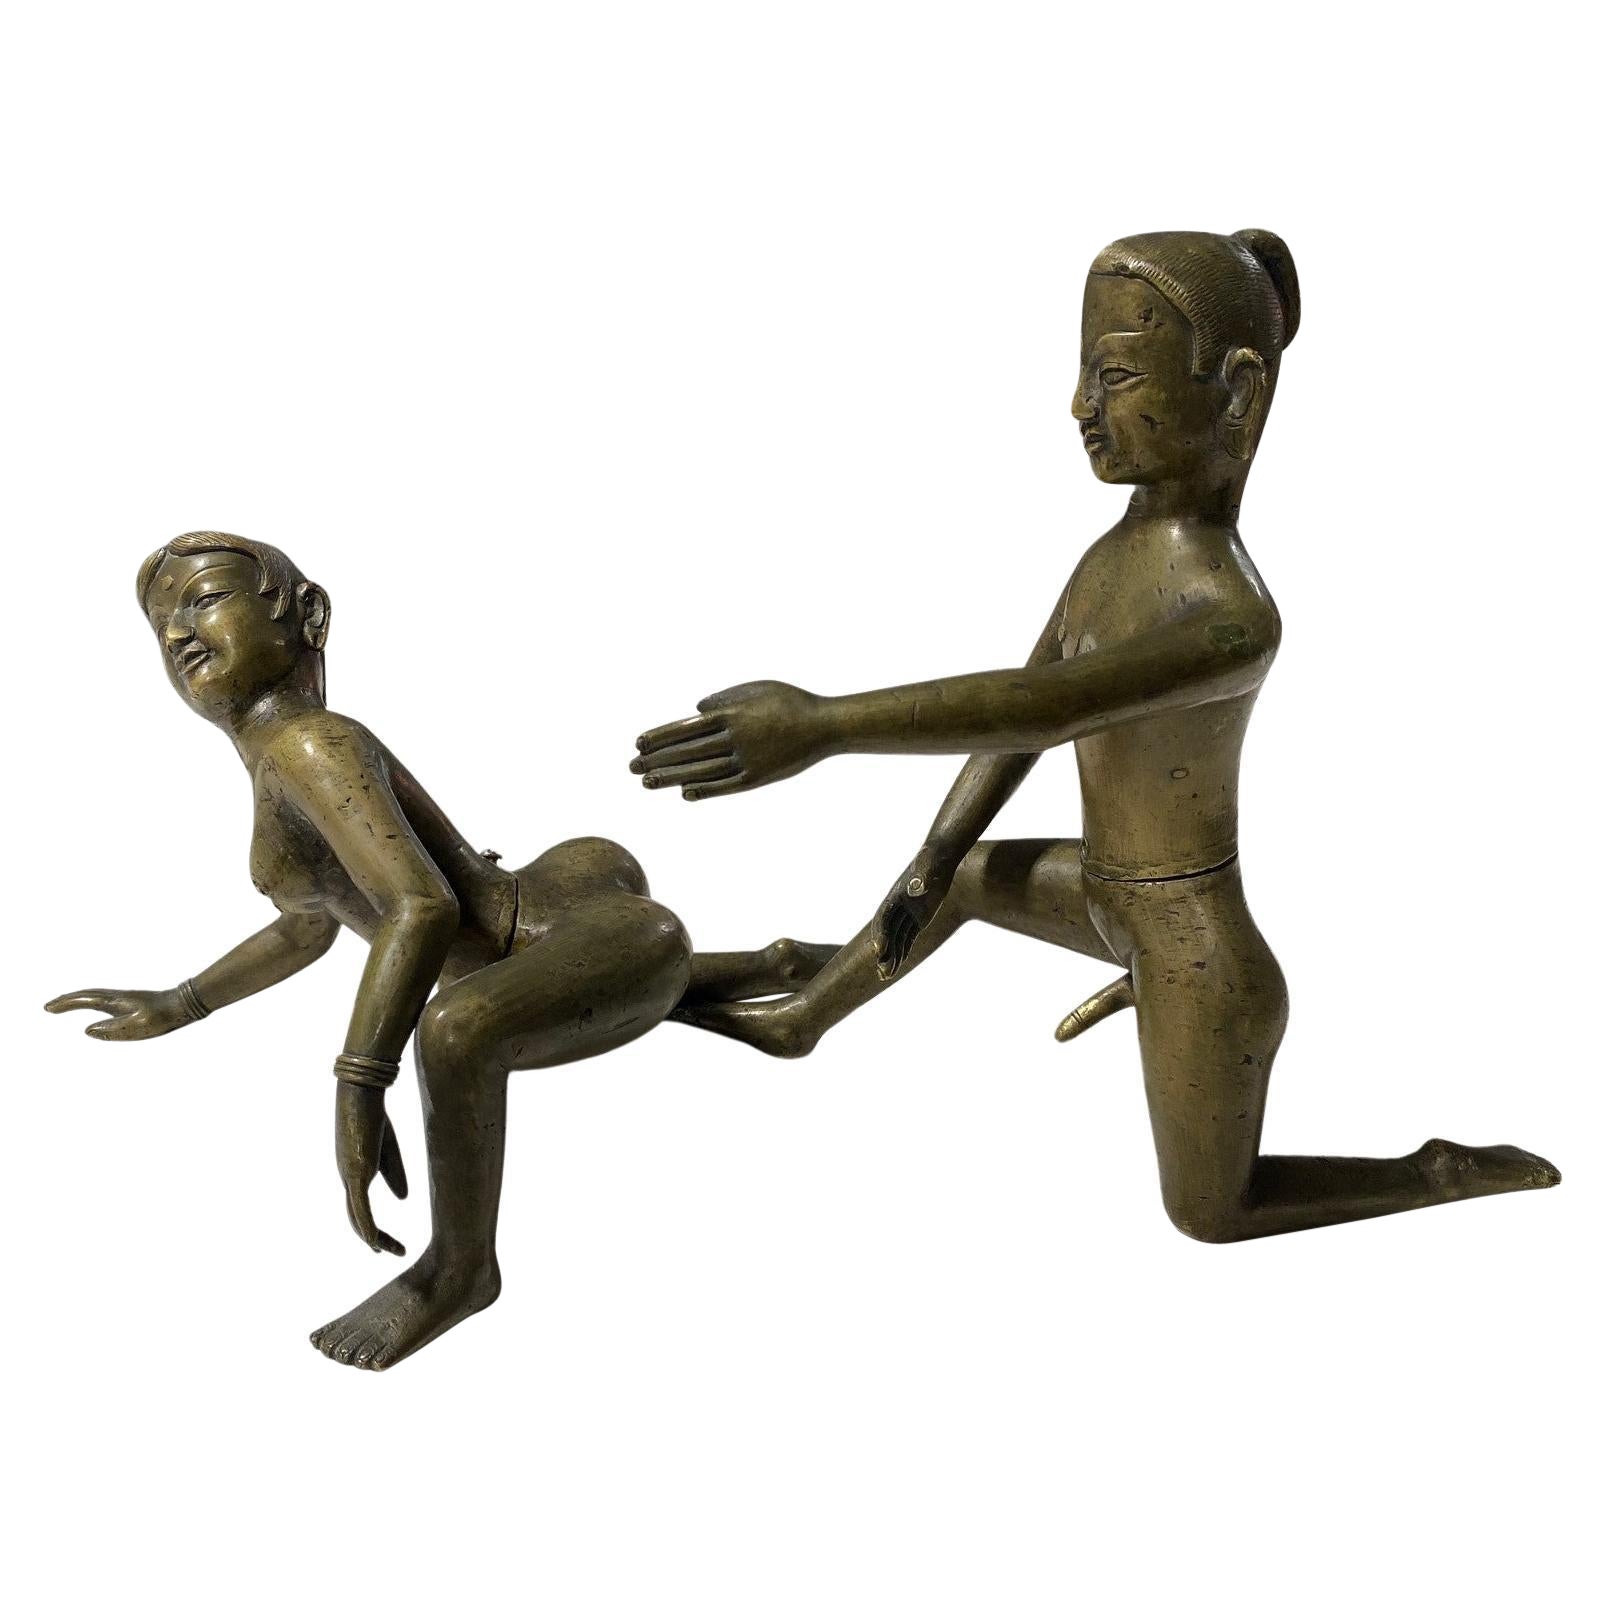 Skulptur Kama Sutra-Figuren aus schwerer Bronze, Indien, Südostasiatisch, erotisch, Kama Sutra